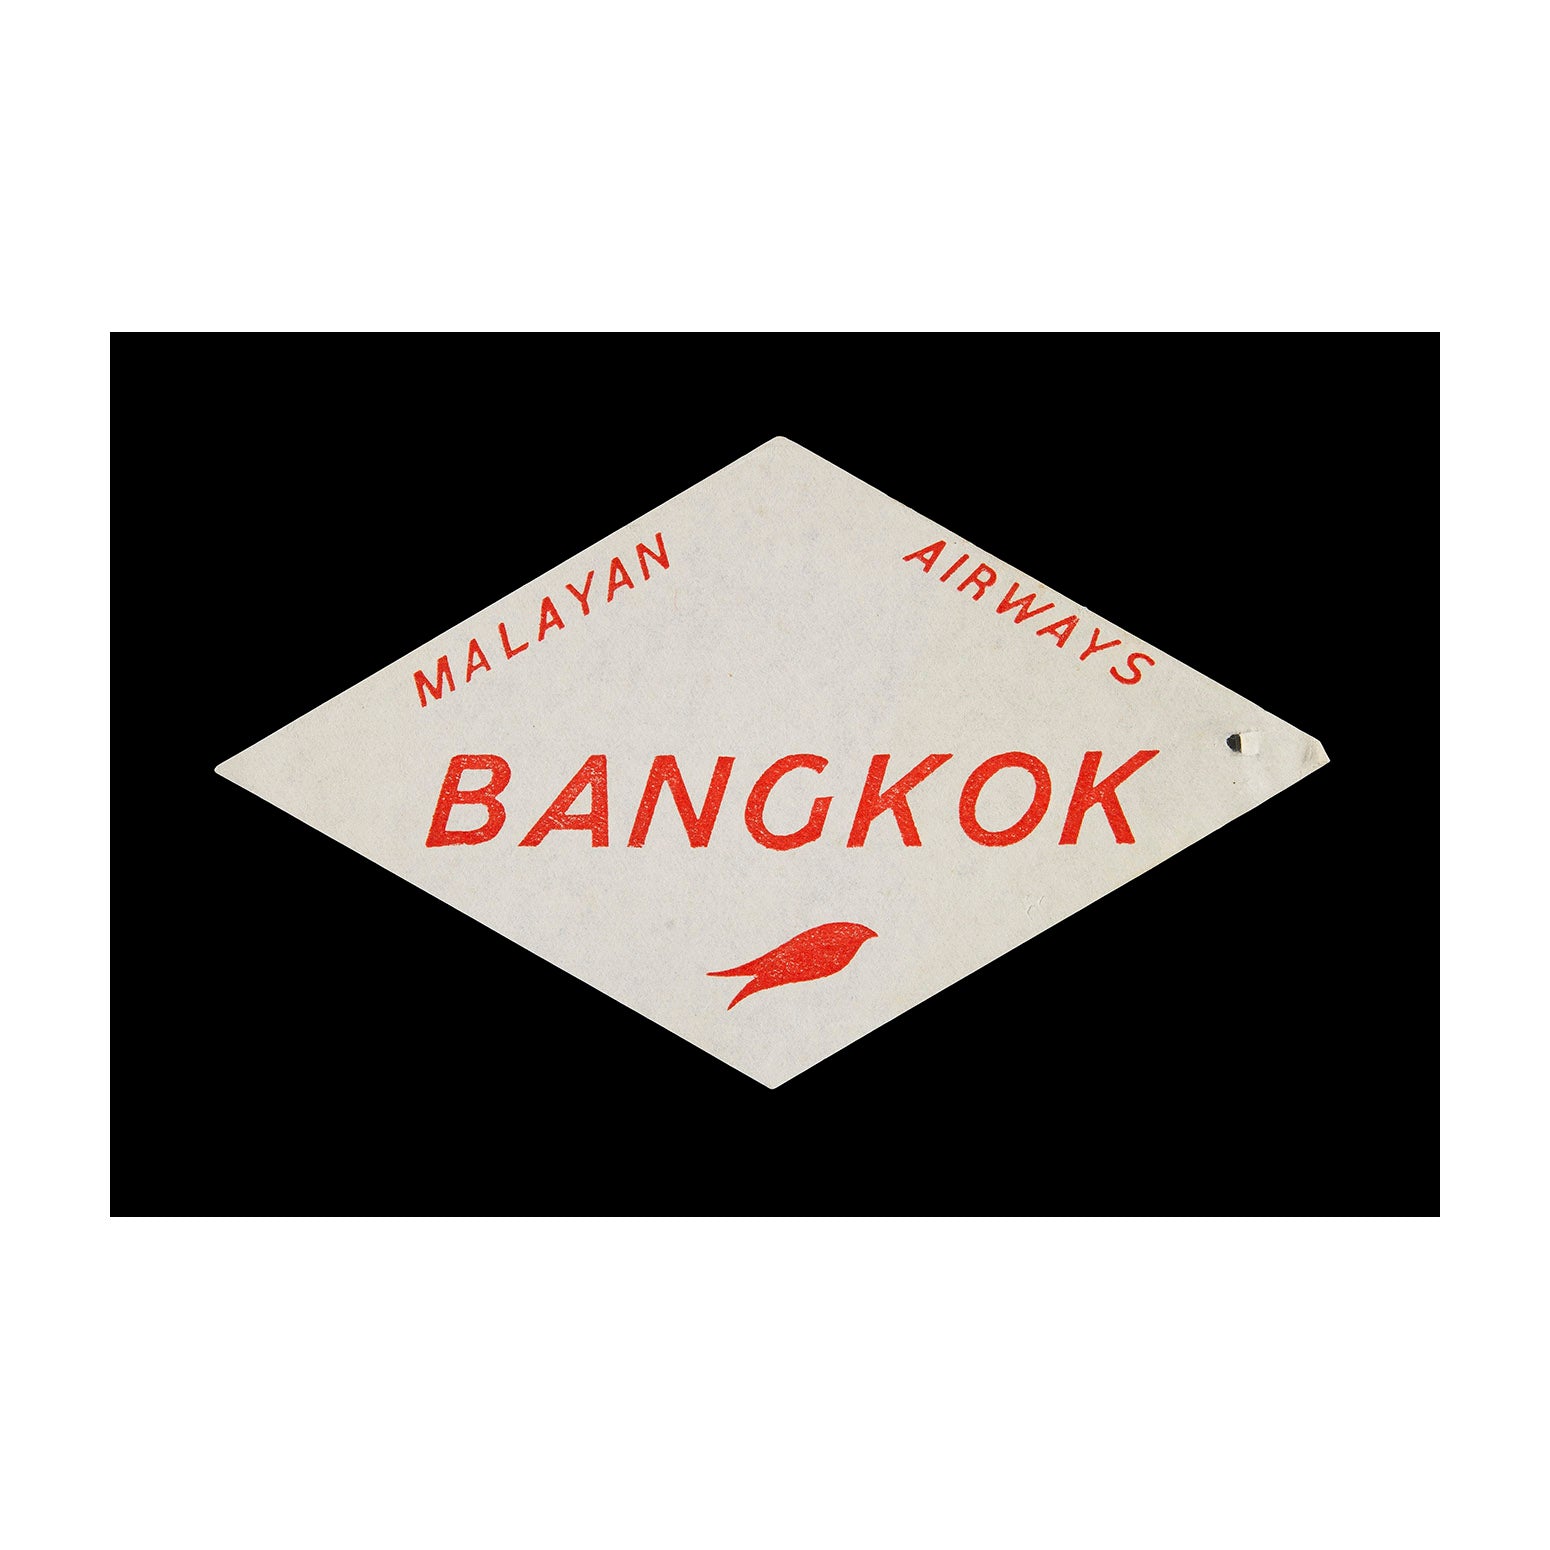 Malayan Airways Bangkok (Luggage Label)